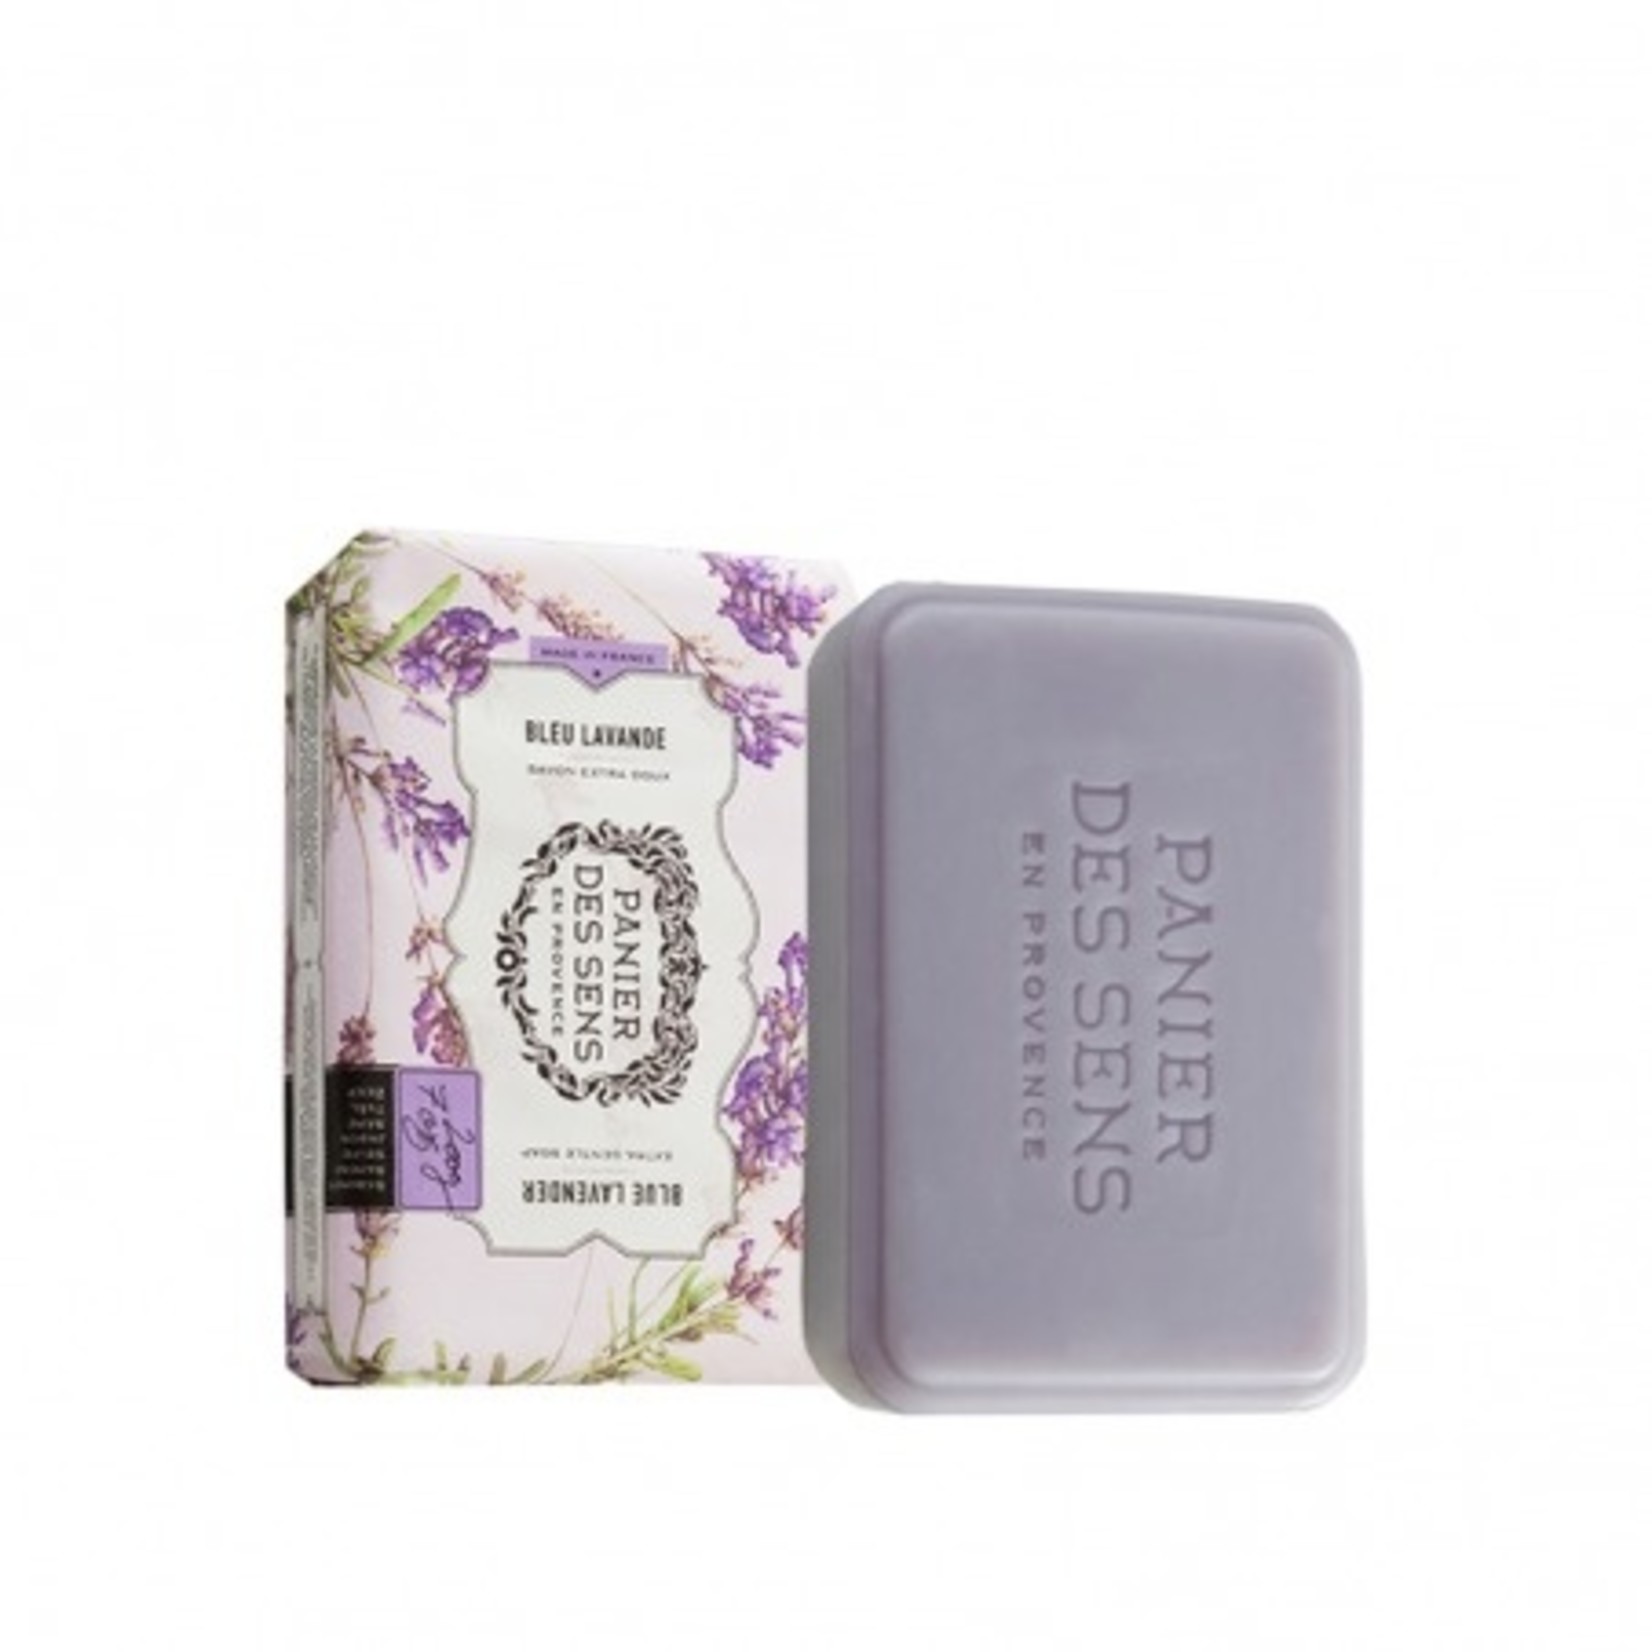 Panier des Sens Extra Gentle Soap (Sheabutter)  - Blue Lavender